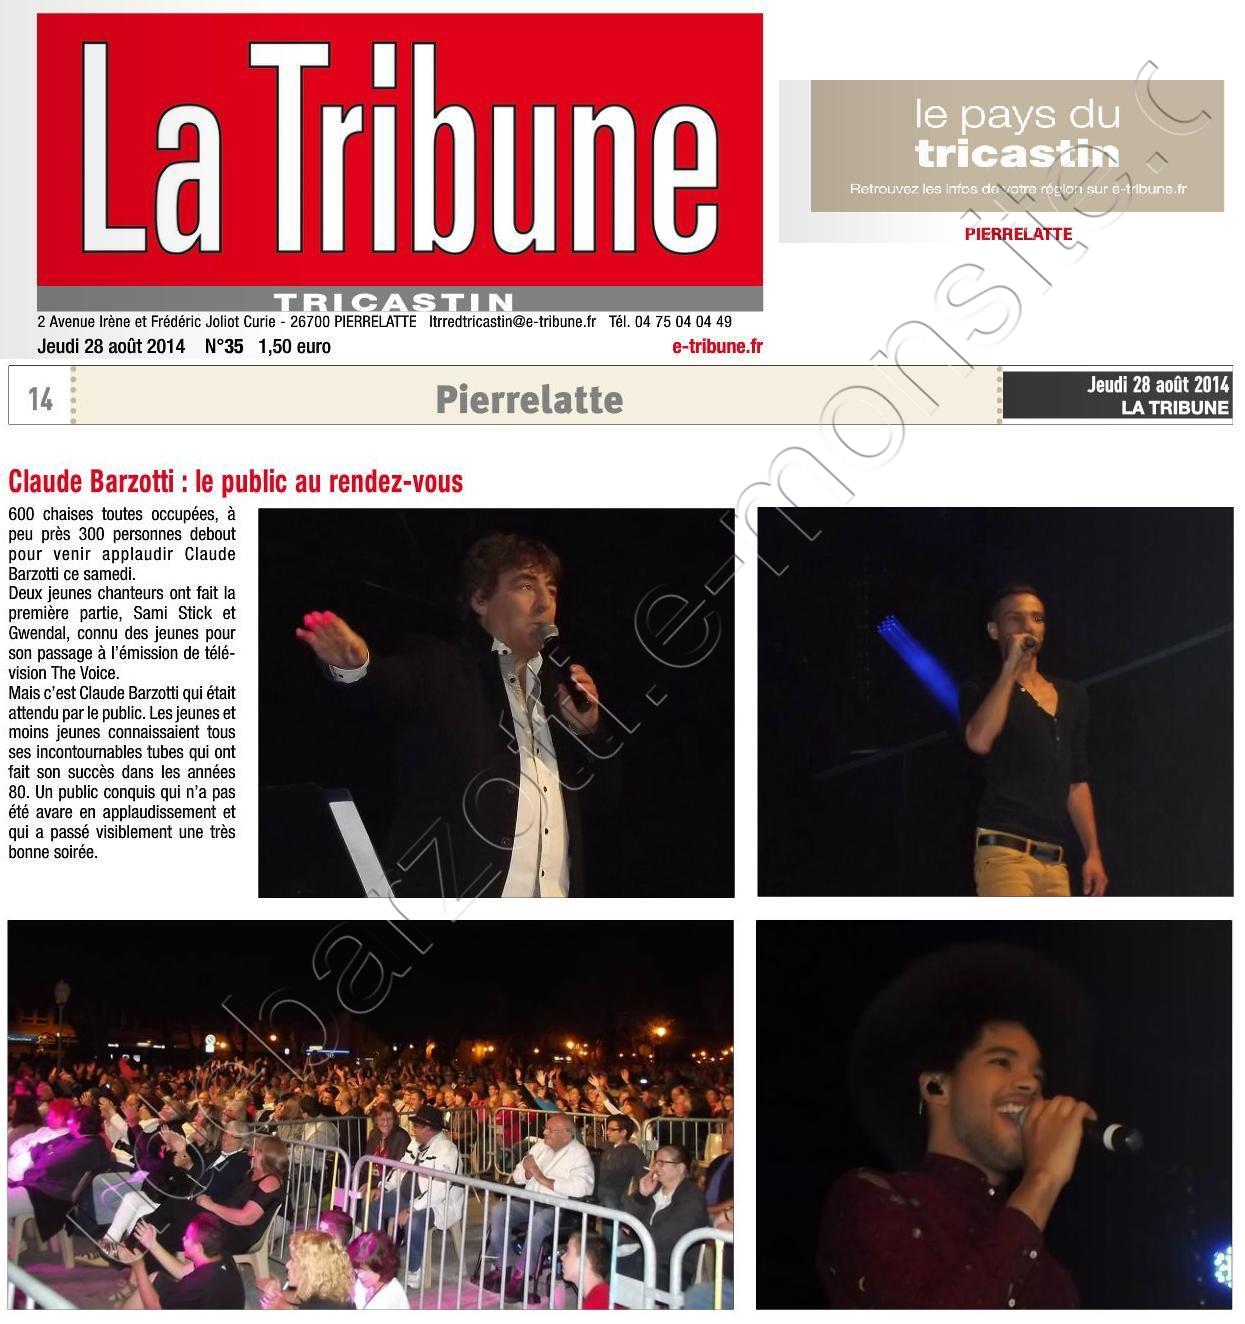 La tribune le pays du Tricastin du jeudi 28 août 2014 page 14 (1/3 de page + photos) Claude Barzotti le public au rendez-vous